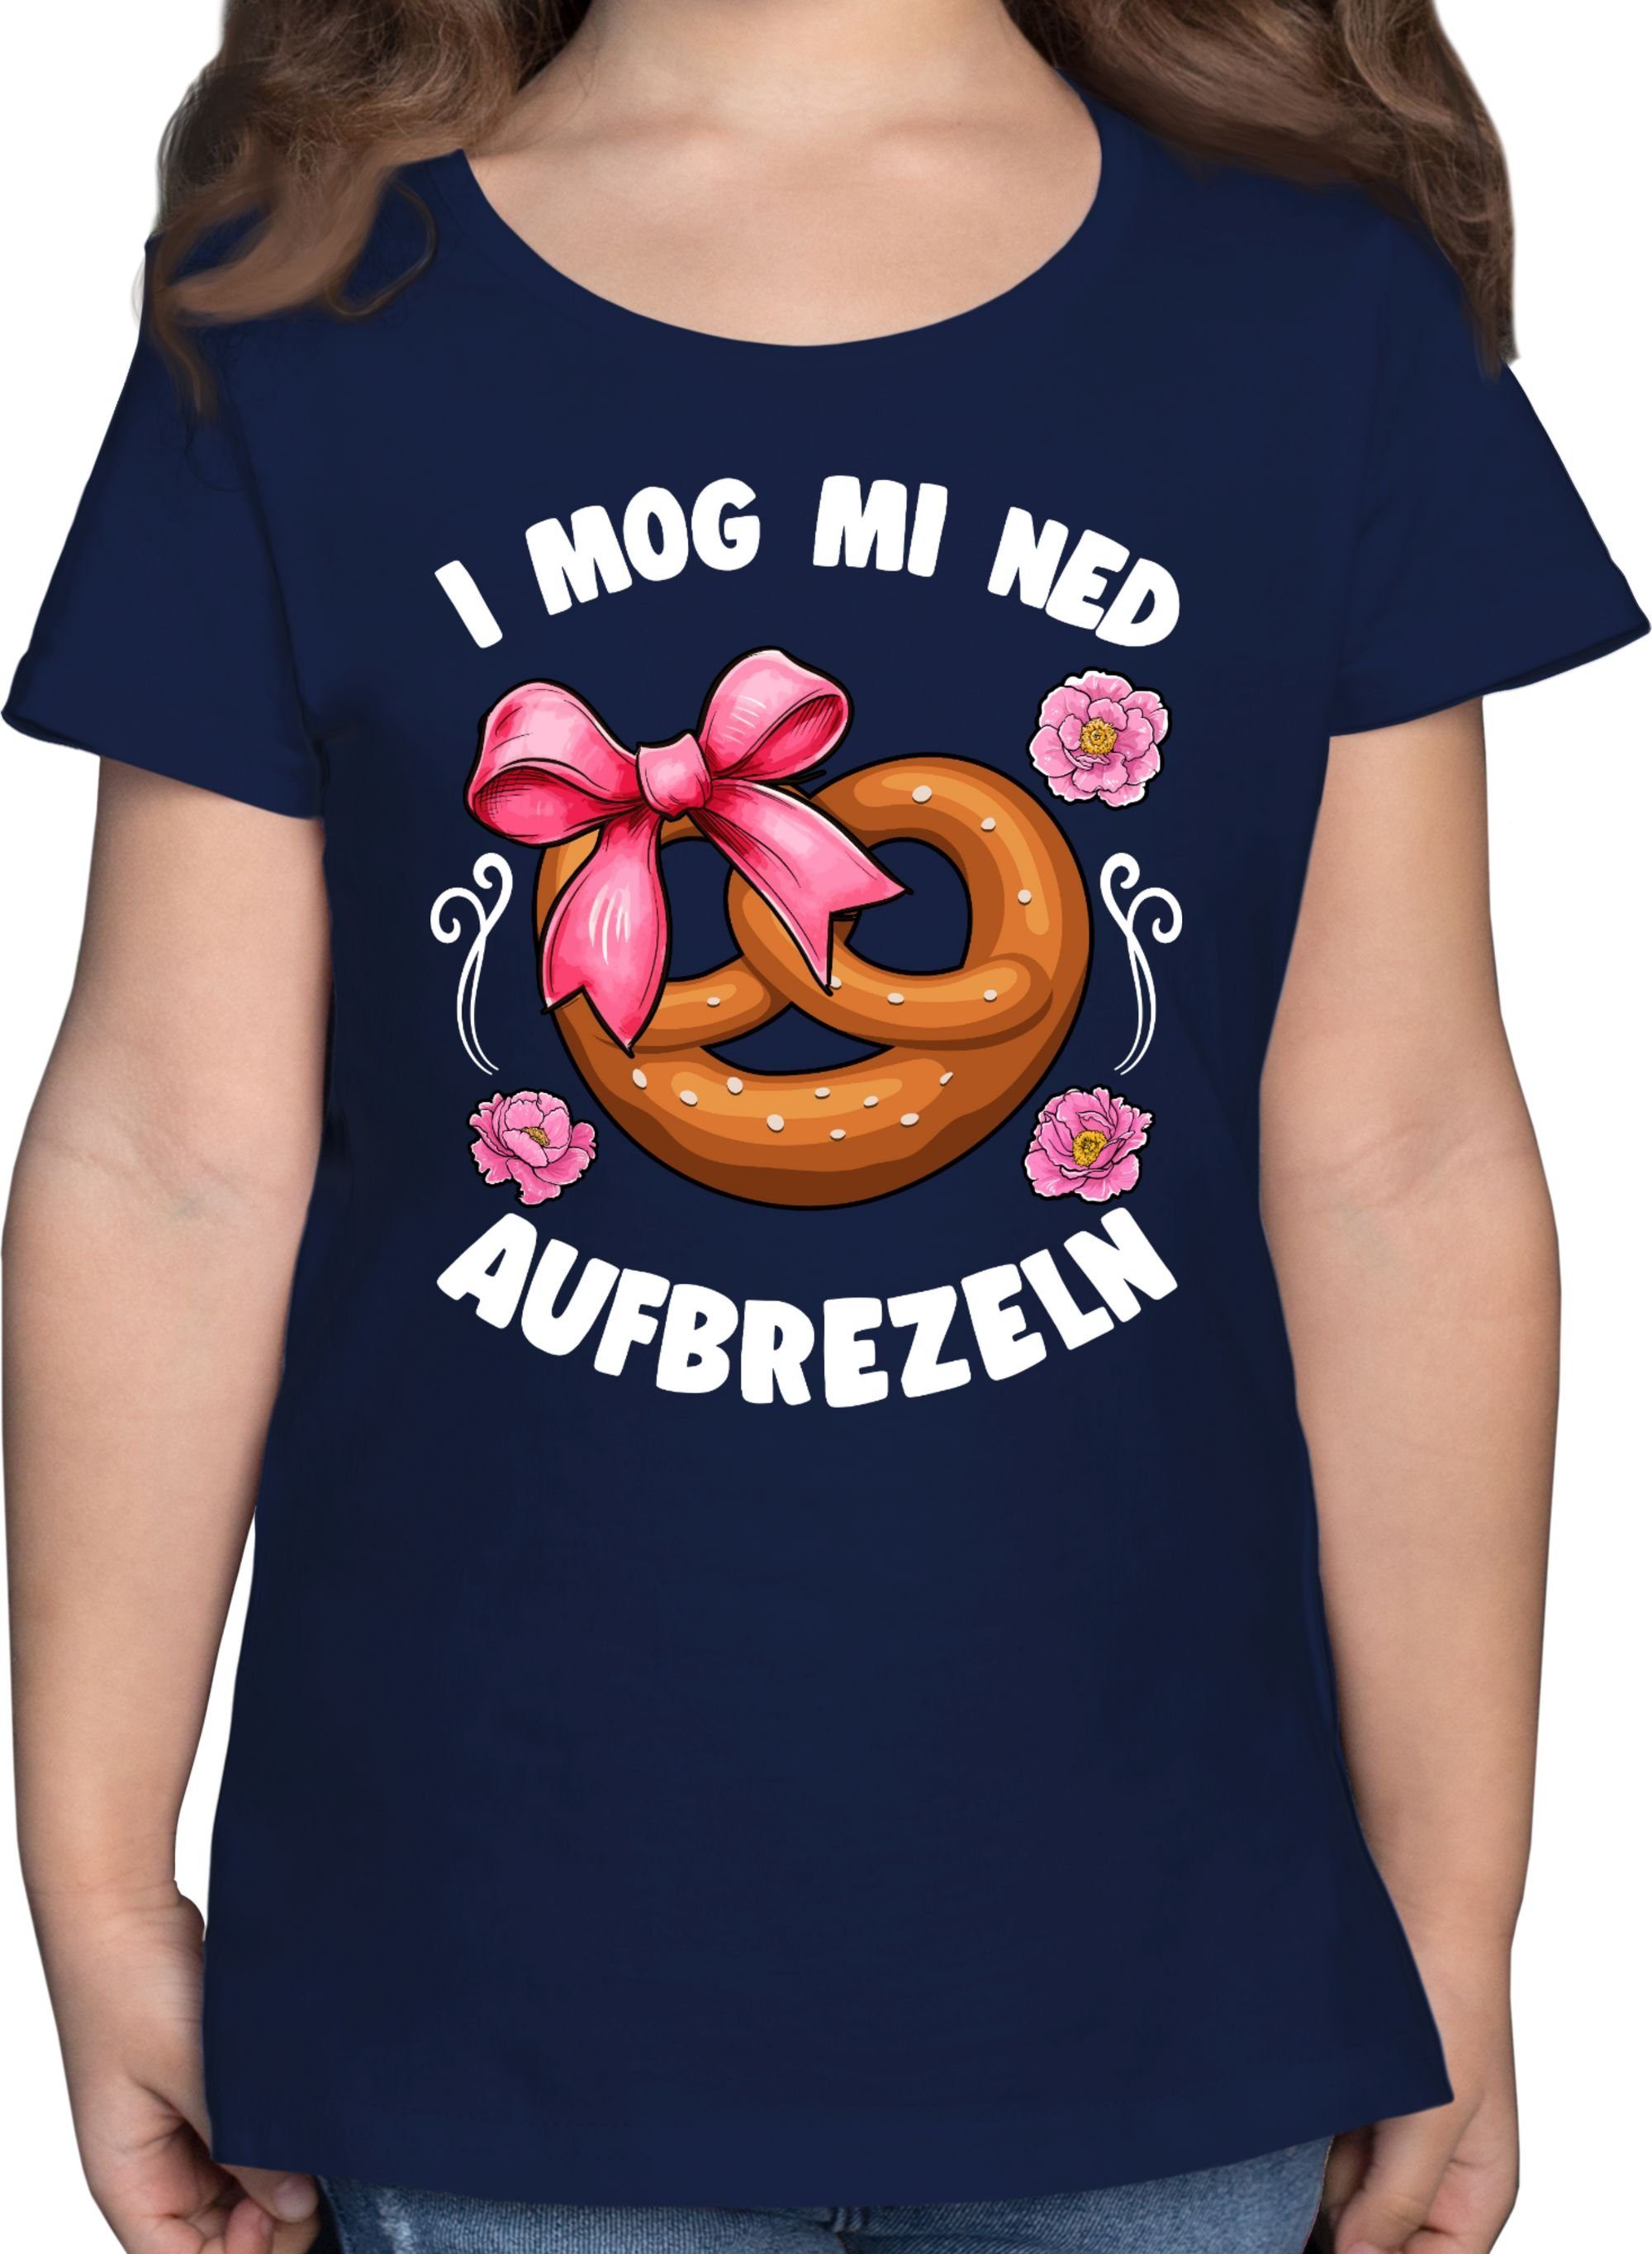 Shirtracer T-Shirt I mog mi ned aufbrezeln Mode für Oktoberfest Kinder Outfit 3 Dunkelblau | T-Shirts